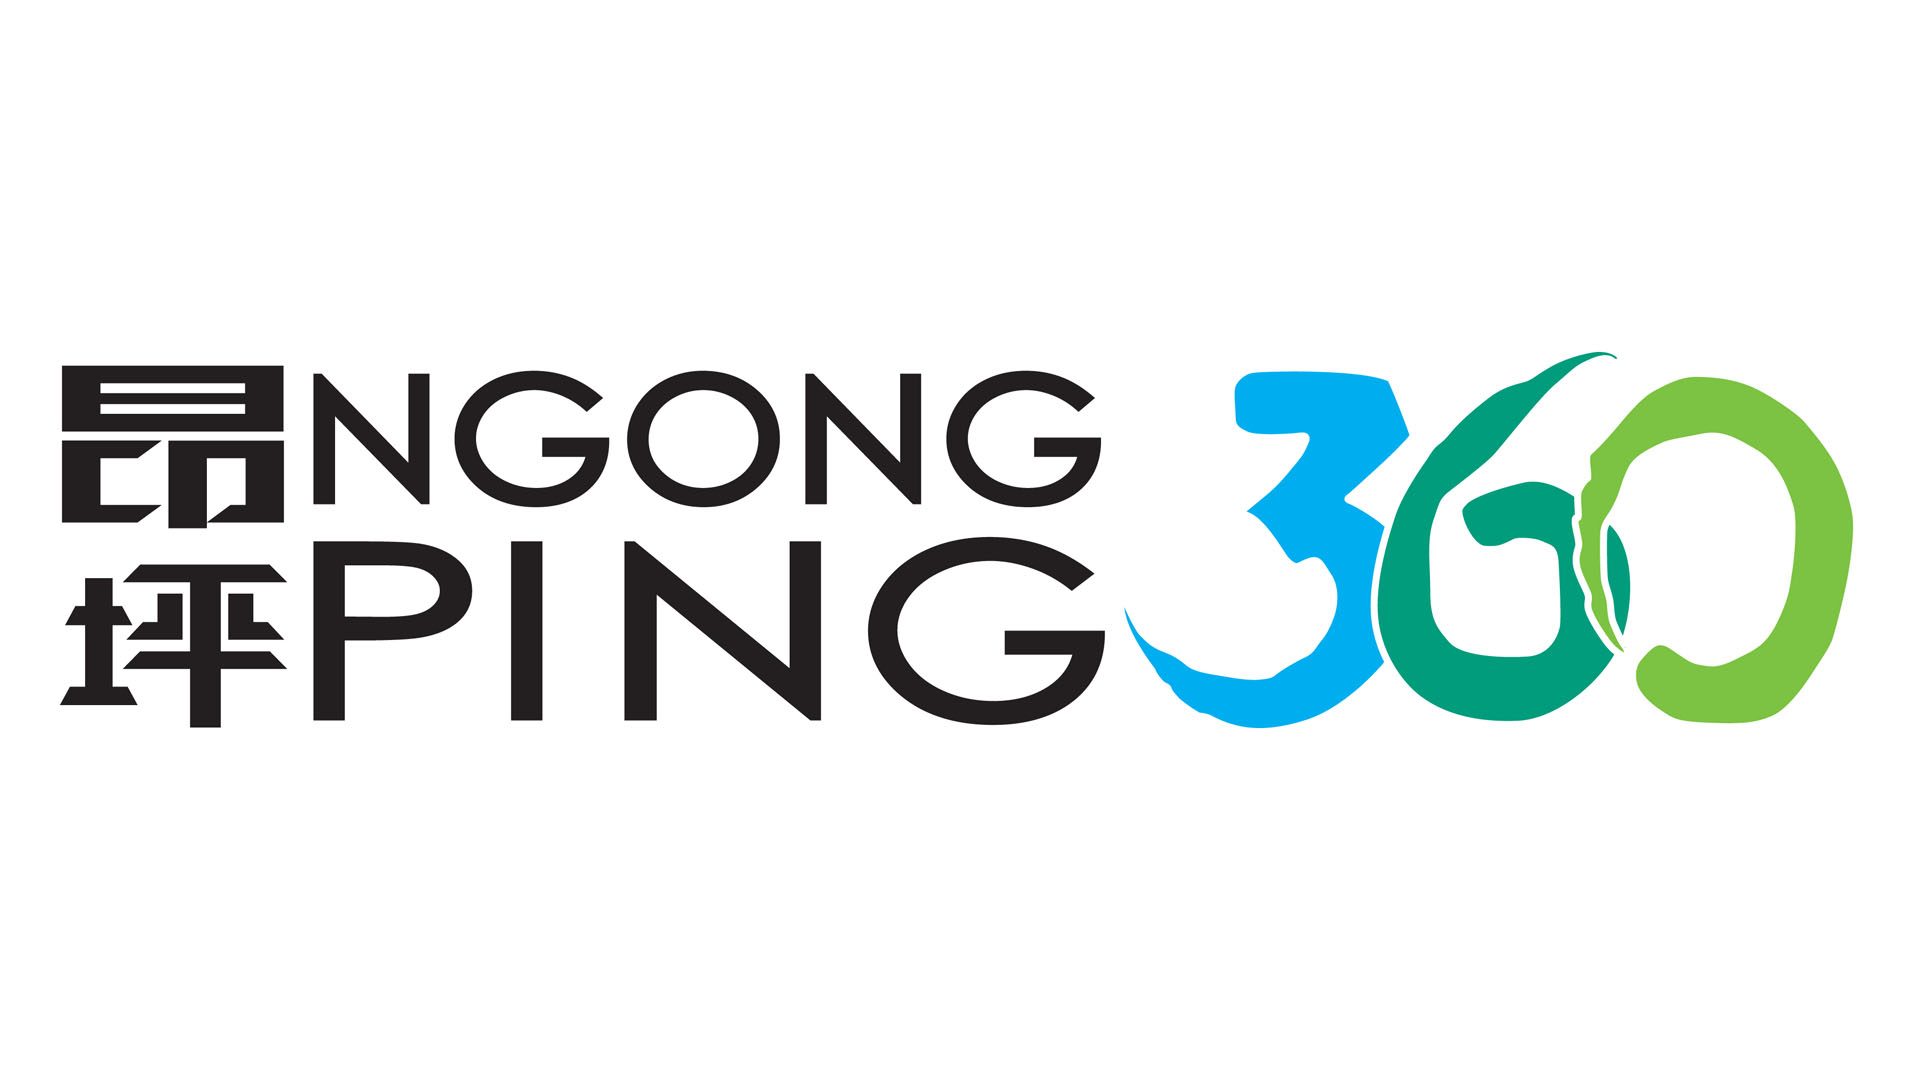 Ngong Ping 360 Limited